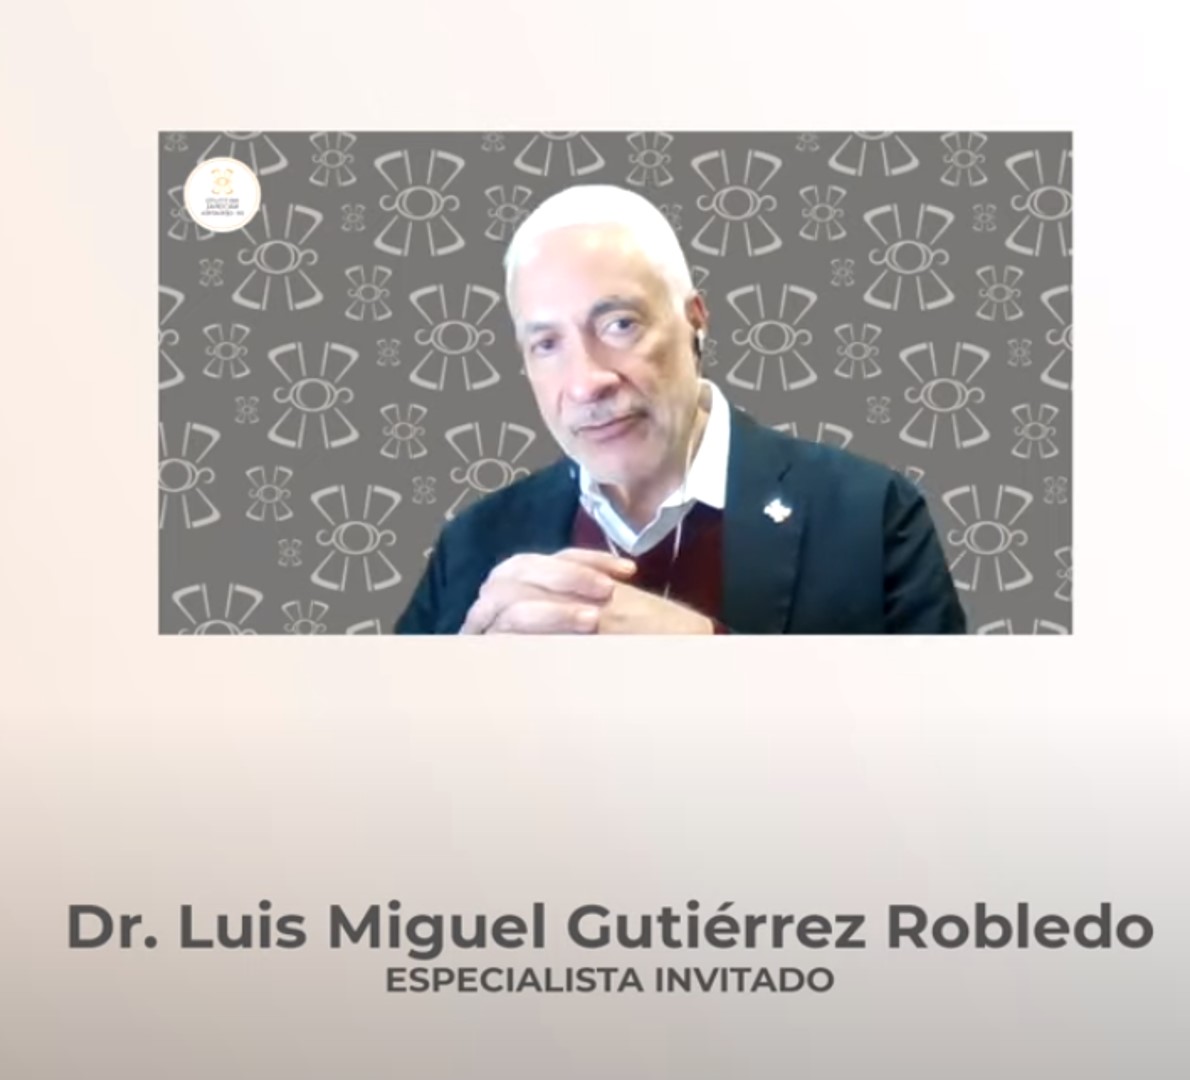 Dr. Luis Miguel Gutiérrez Robledo. Director General del Instituto Nacional de Geriatría